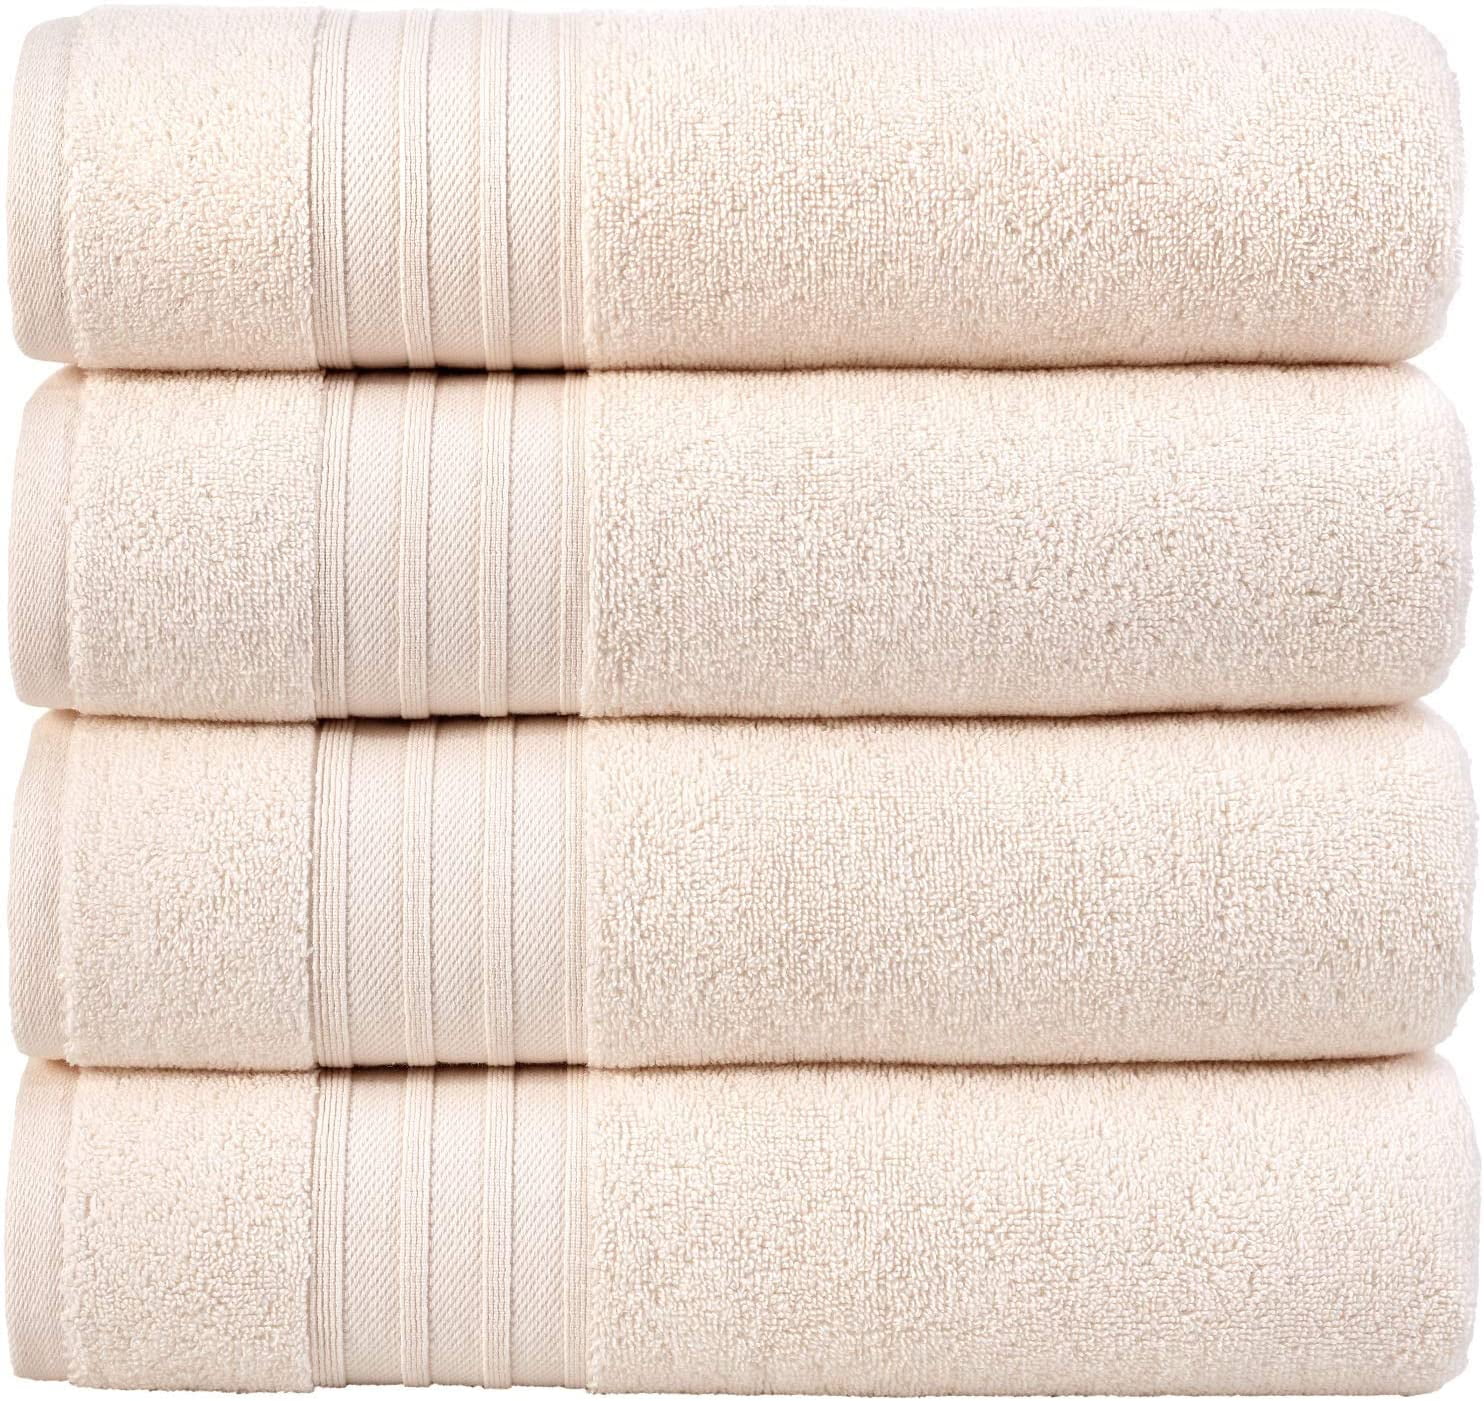 Hammam Linen Bath Towels 4 Piece Set Sea Salt Soft Fluffy, Absorbent ...